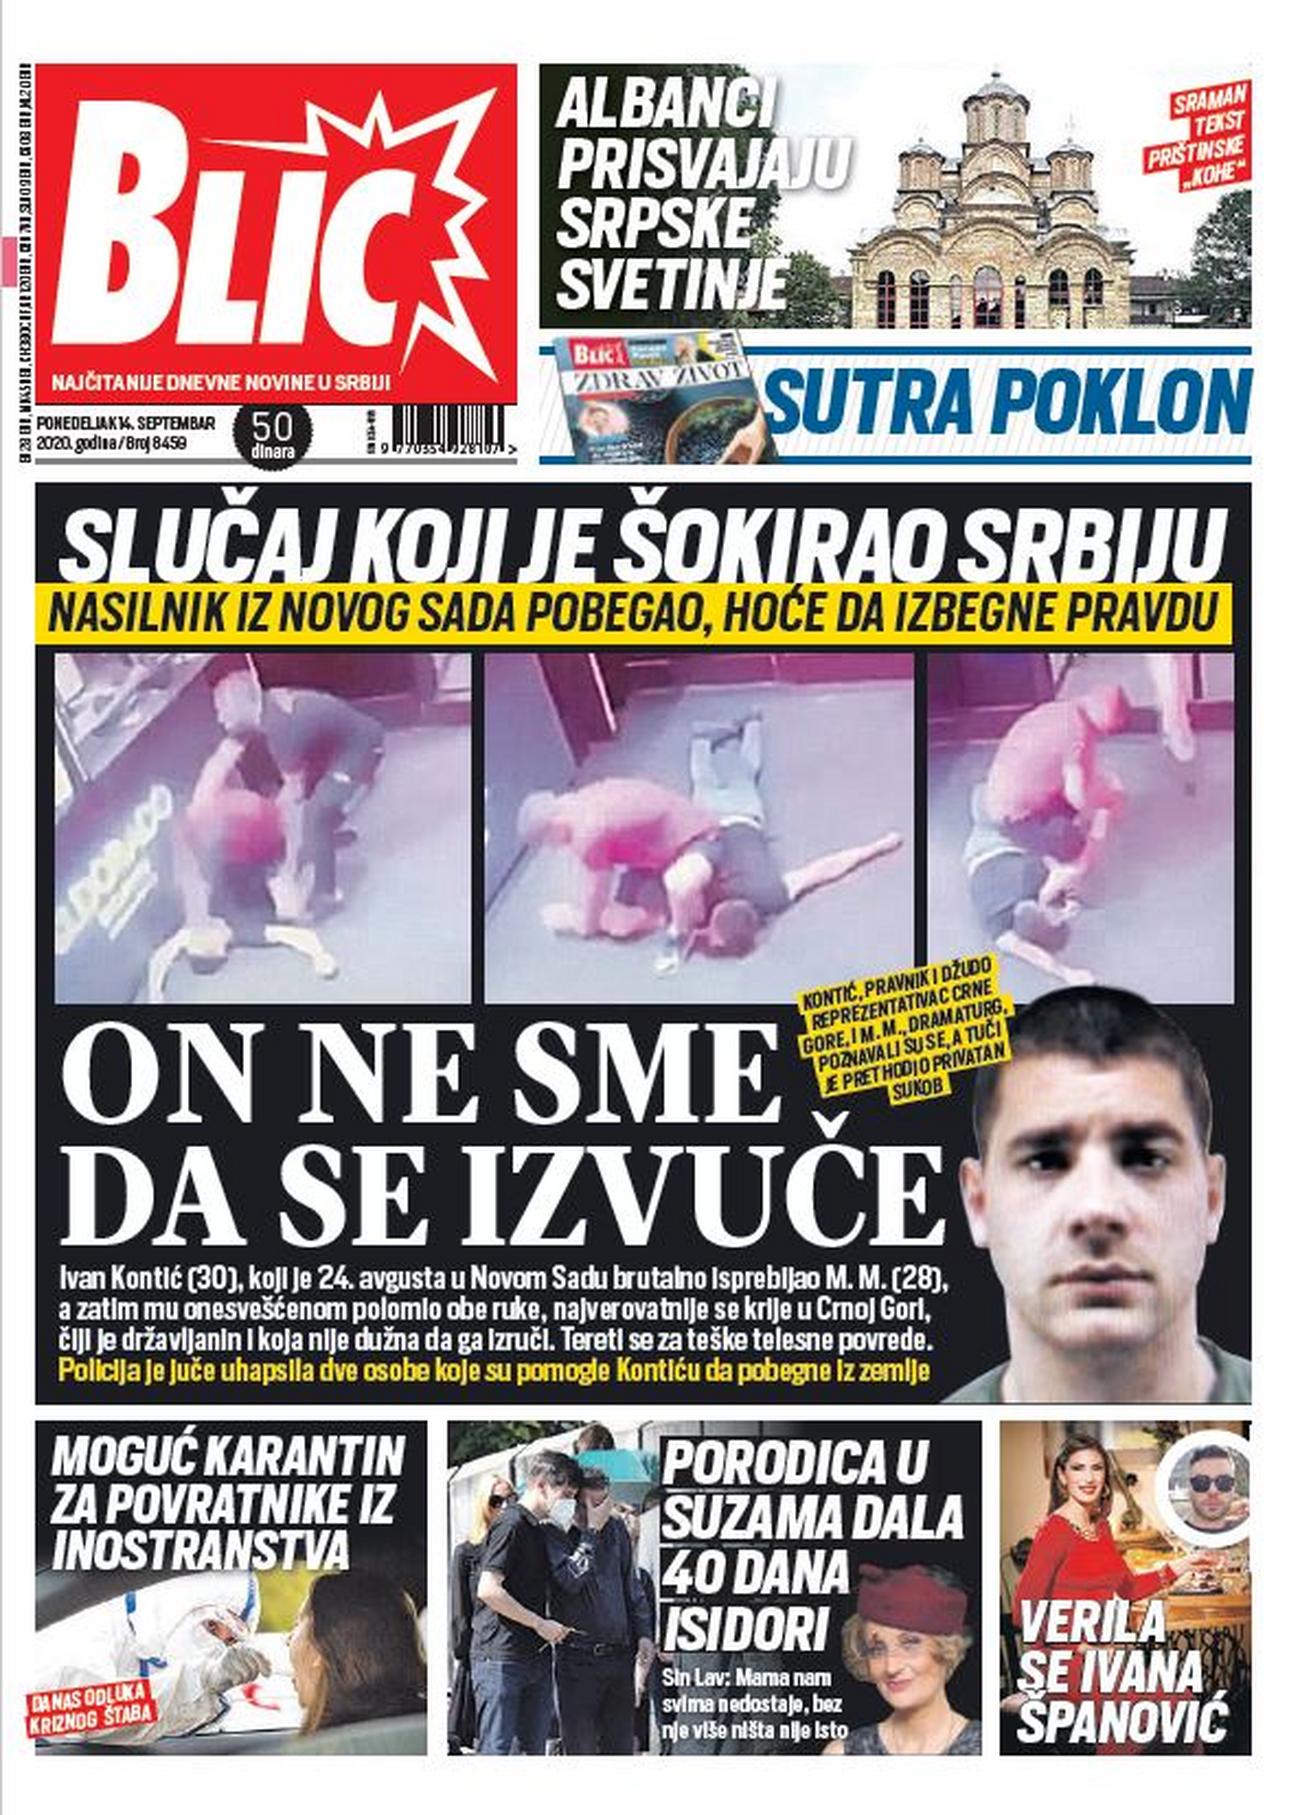 ČITAJTE NOVI "BLIC" ODMAH! Slučaj koji je šokirao Srbiju! ON NE SME DA SE  IZVUČE!